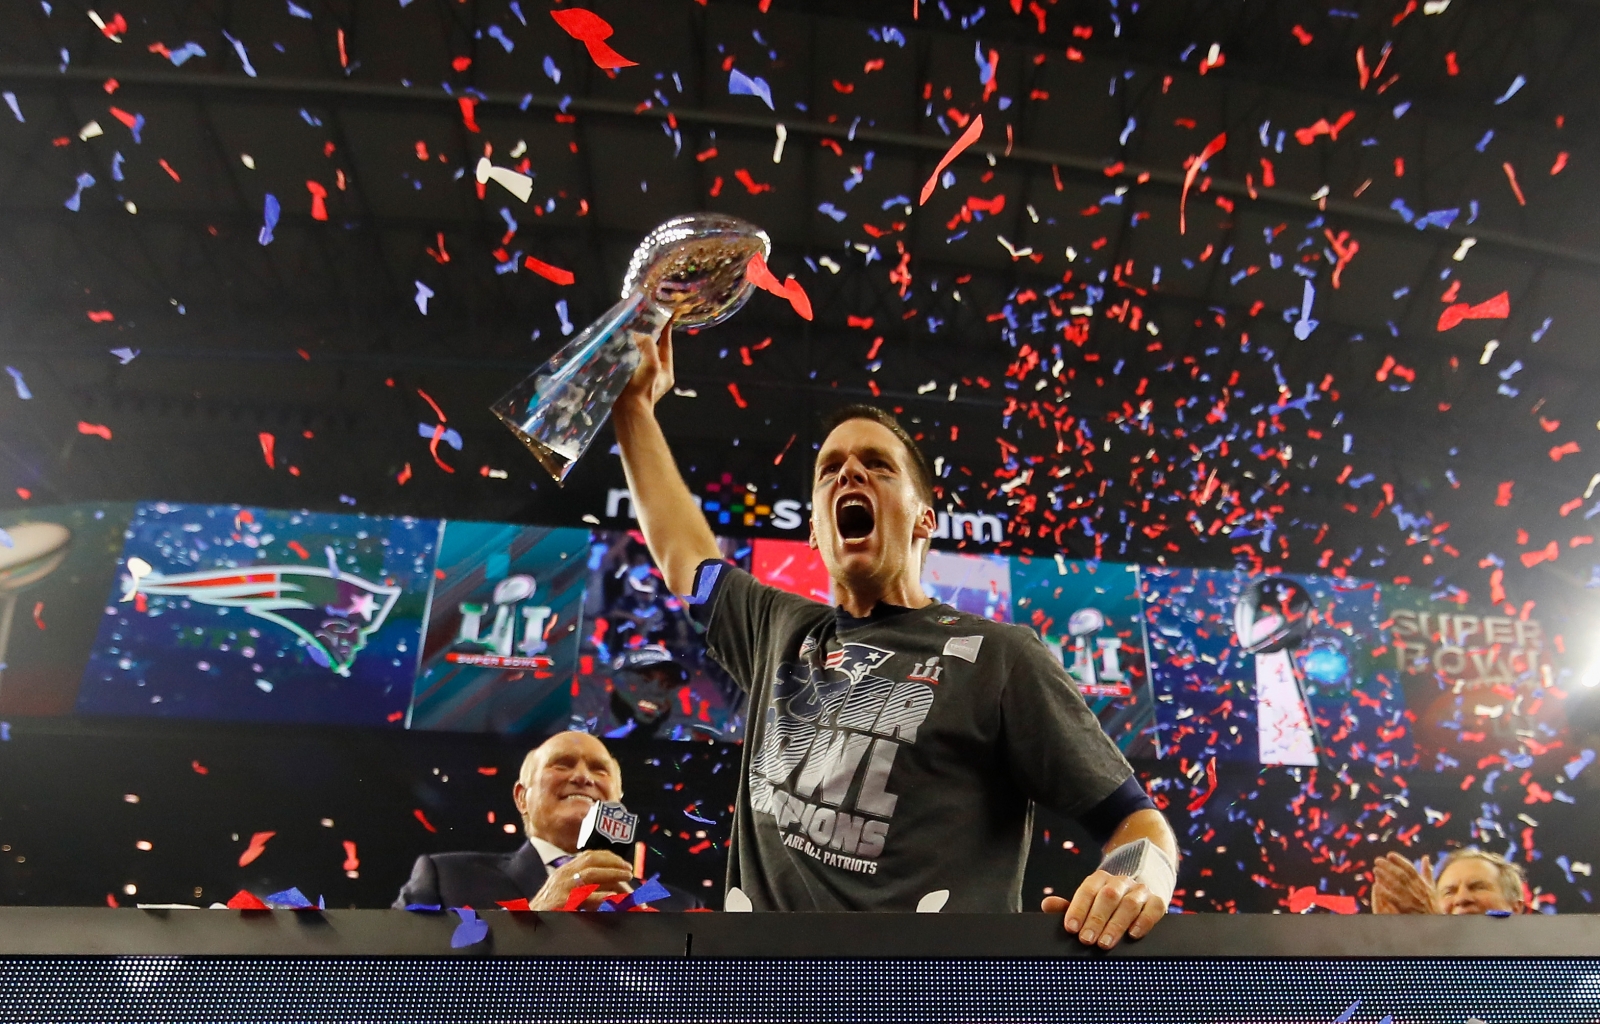 New England Patriots win Super Bowl LI with historic comeback